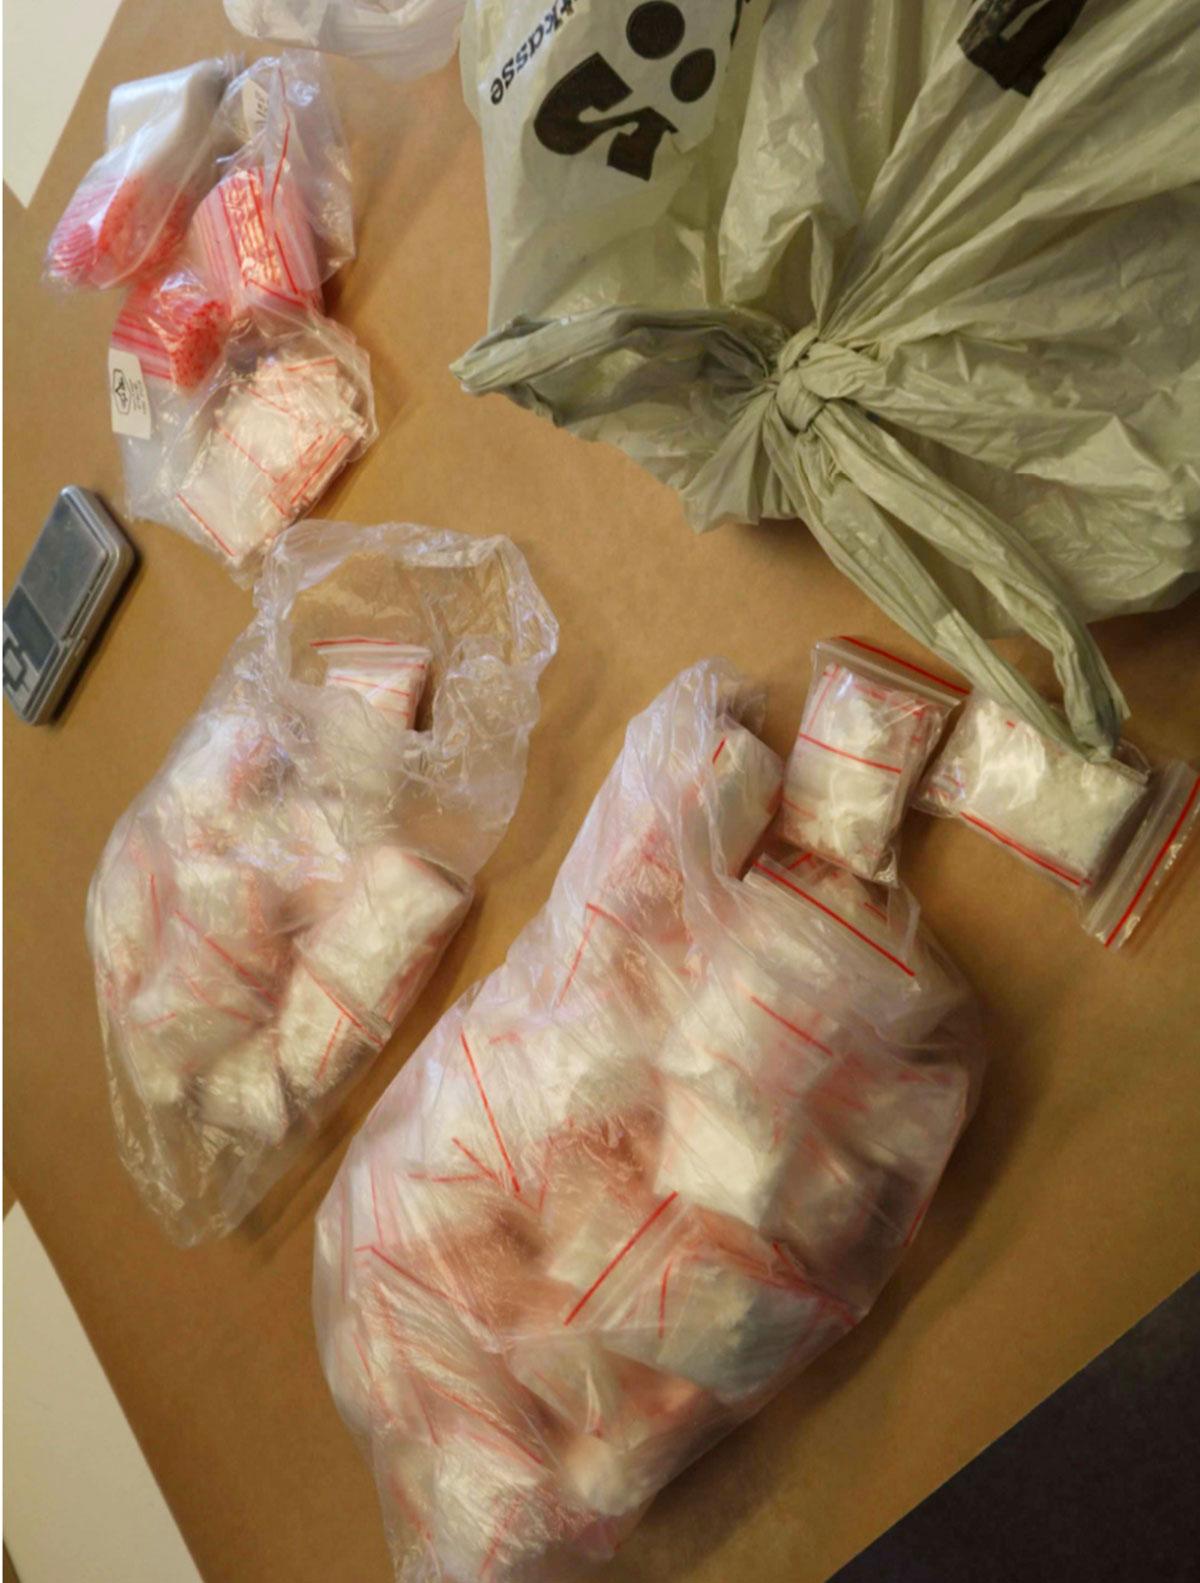 Men i maj sökte polisen igenom ett trapphus i södra Stockholm i samband med ett annat ärende. Vid porten hittades drygt 400 gram höghaltigt kokain, och två pistoler.